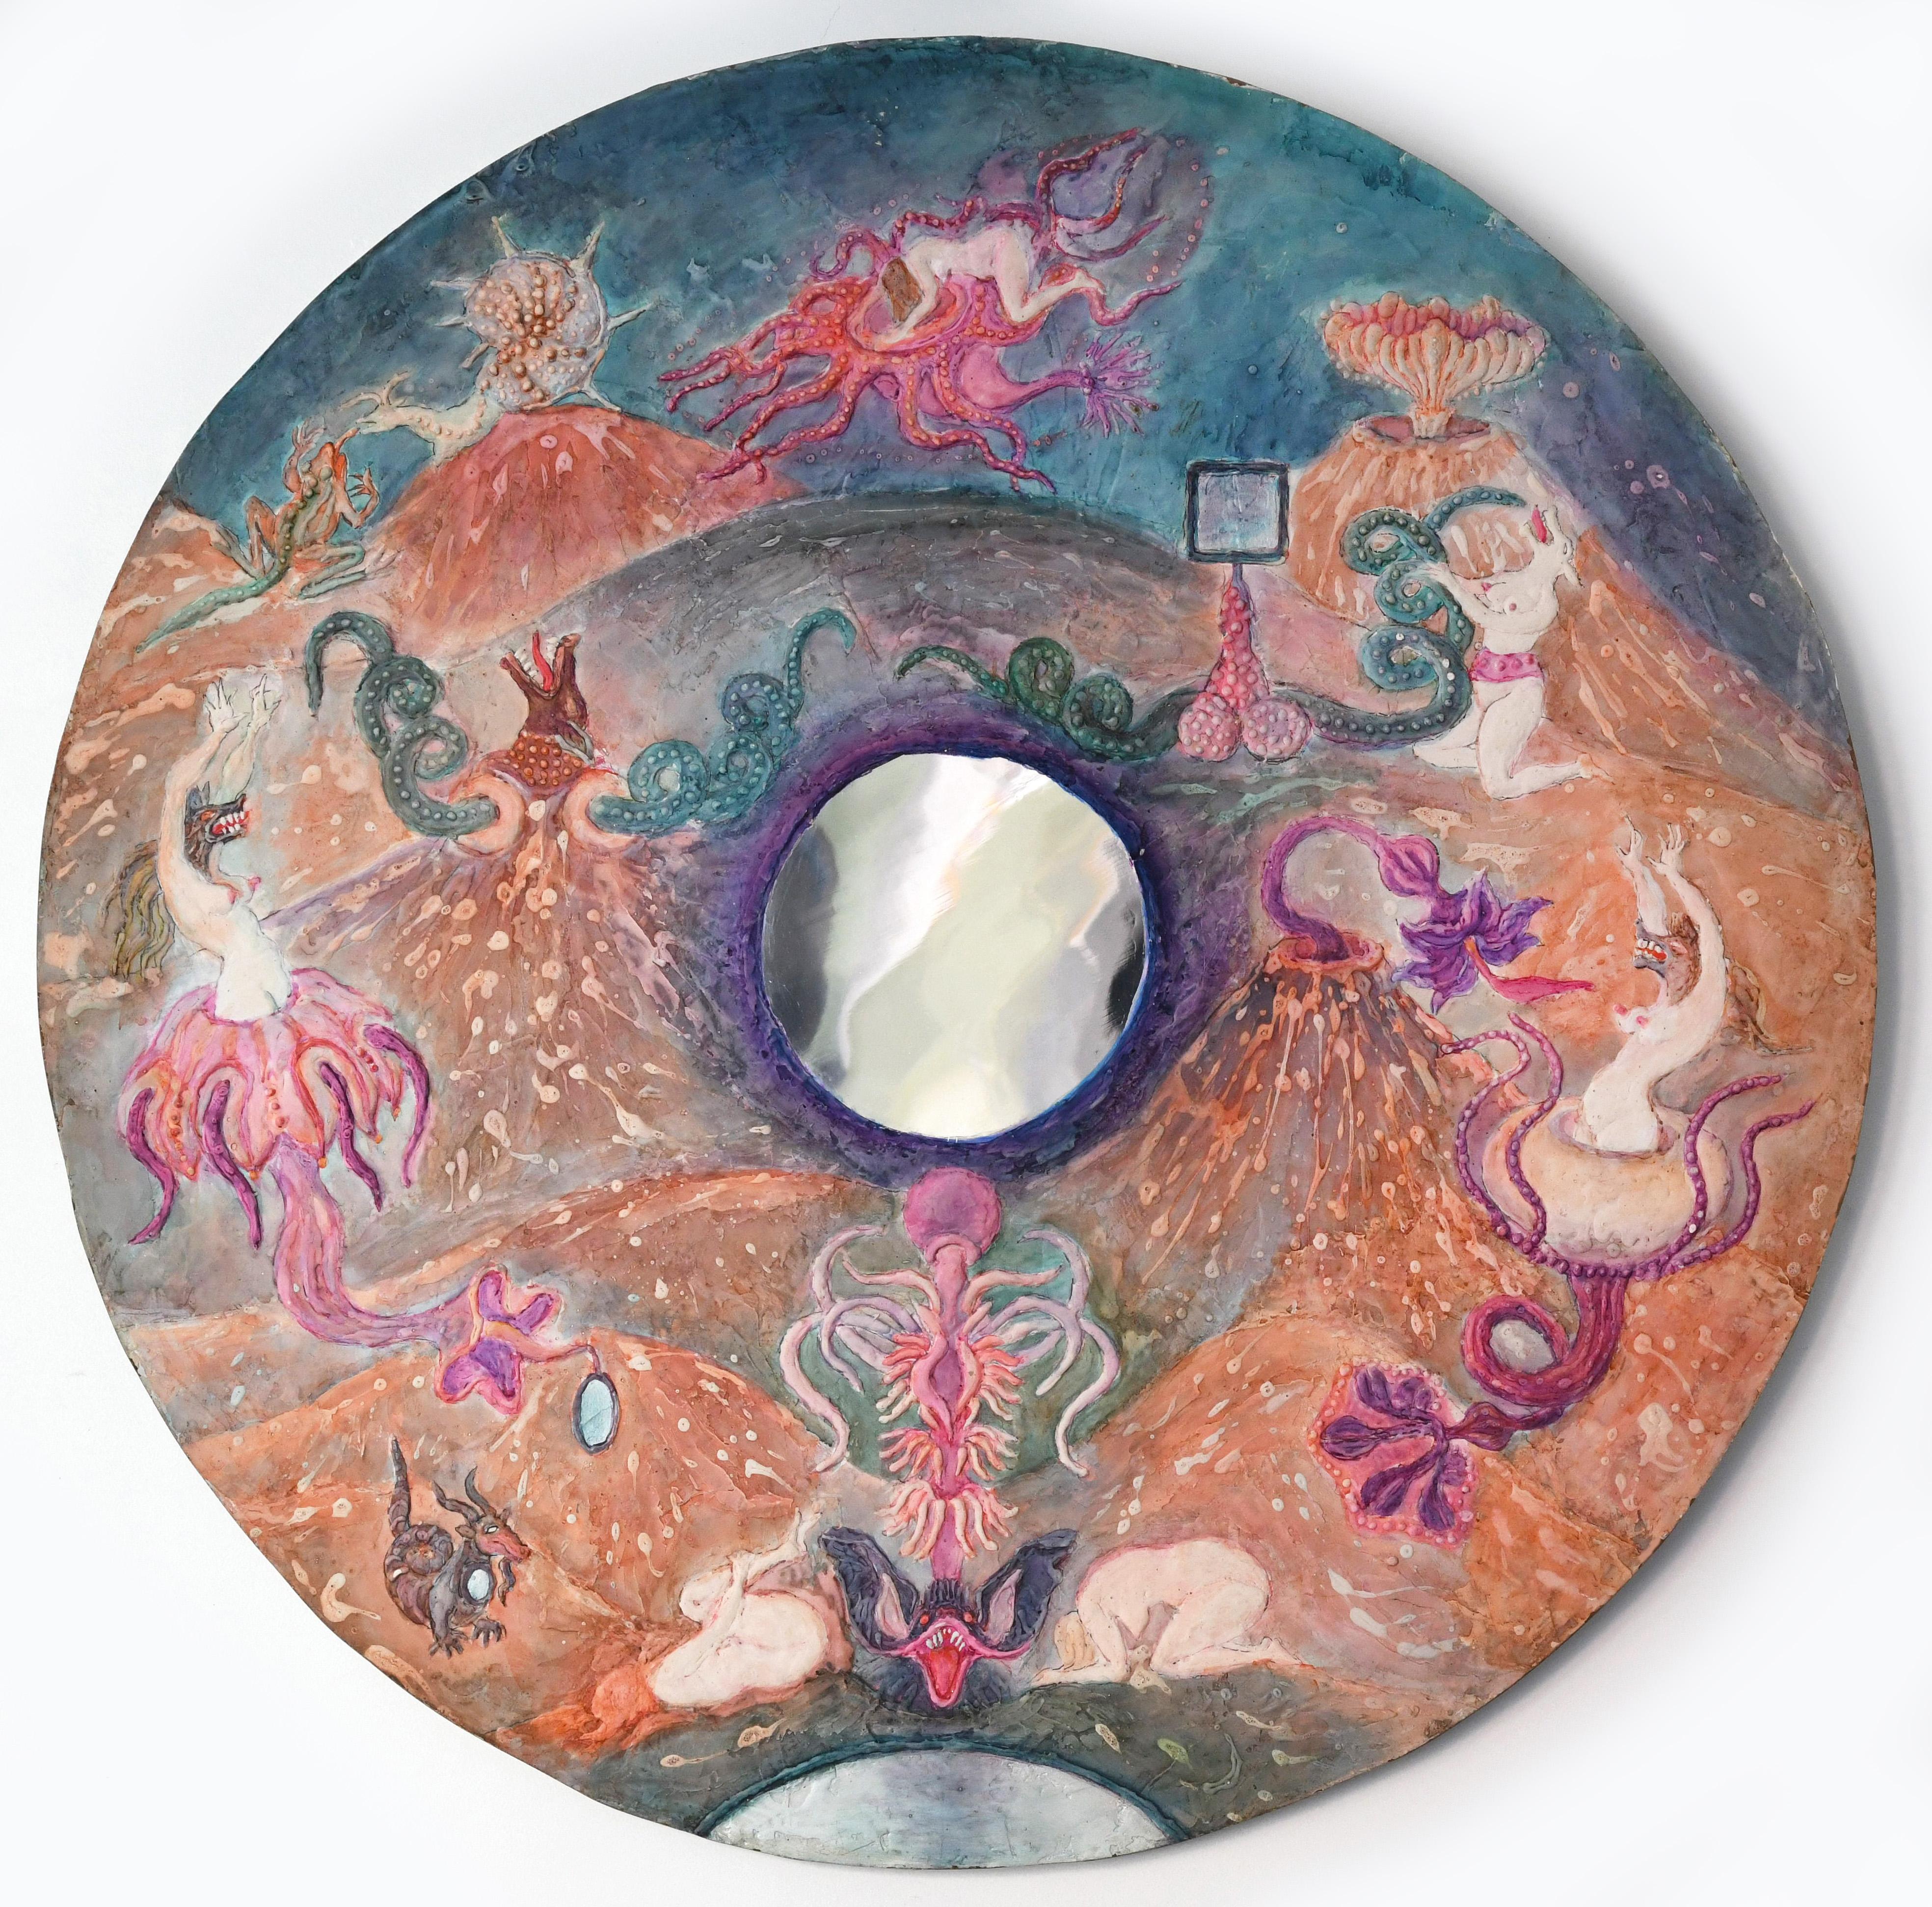 The Devil's Mirror - Mixed Media Art by Noche Crist